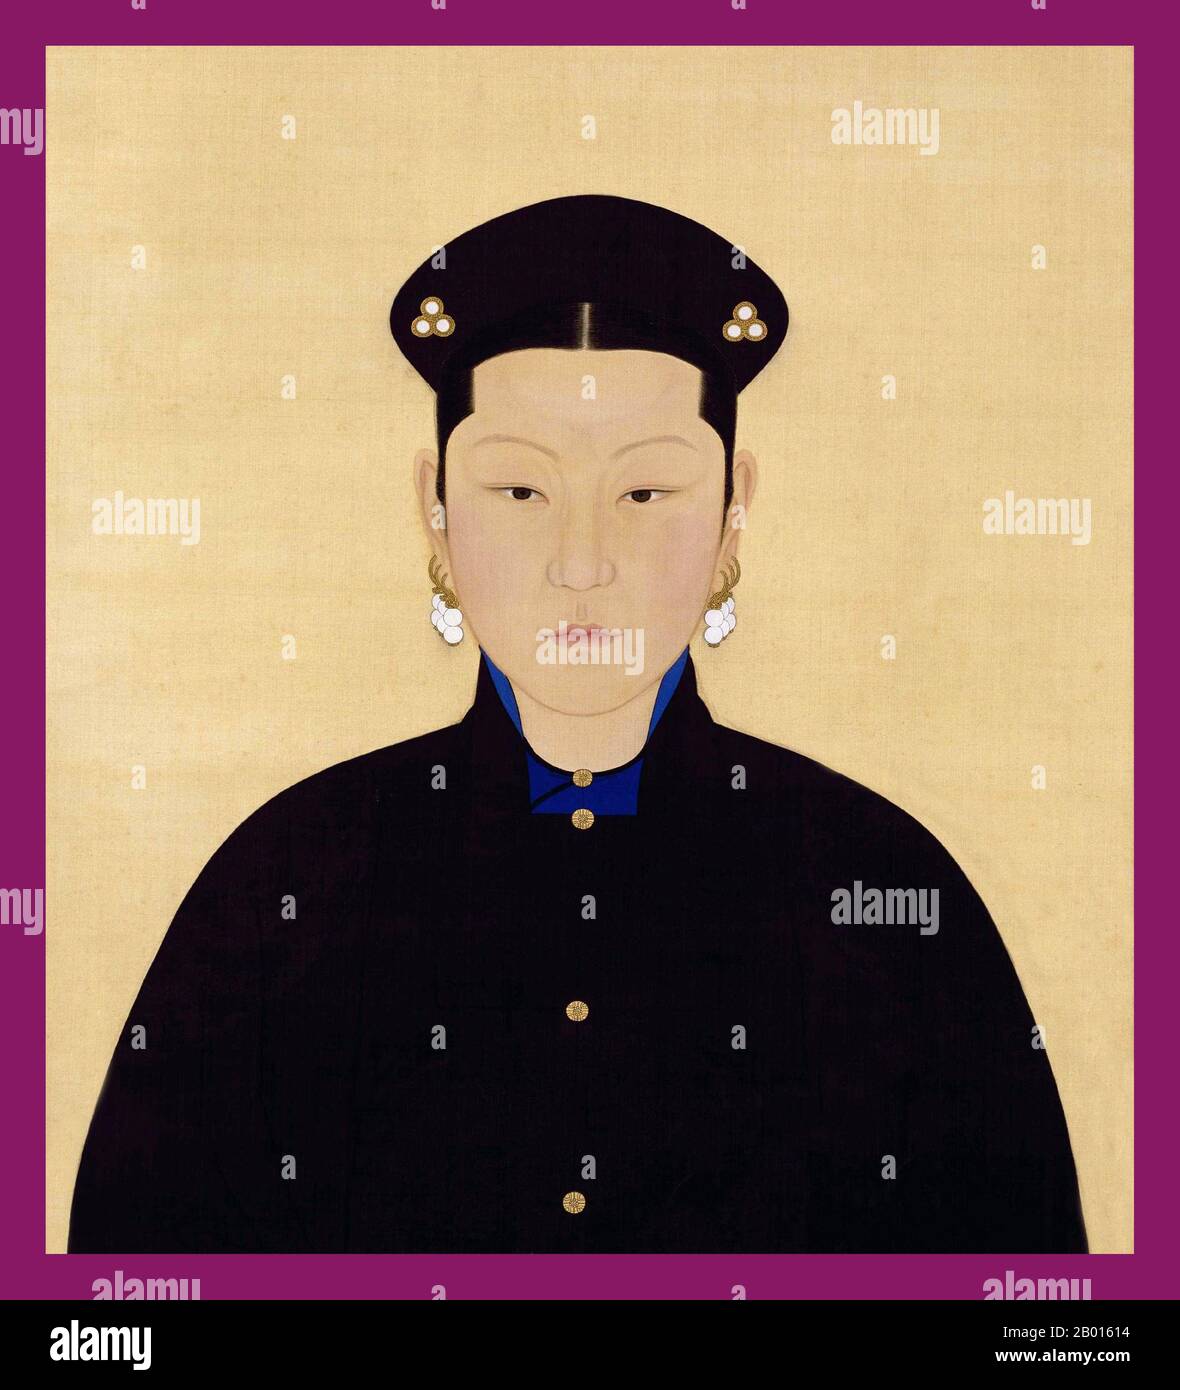 Cina: Imperatrice Xiao Yi Ren (-24 agosto 1689), terza consorte dell'imperatore Kangxi. Dipinto a spirale sospeso, 18 ° secolo. L'imperatrice Xiaoyiren, nome personale Tunggiya, era il terzo consorte dell'Imperatore Kangxi. Era del clan di Tunggiya ed era la figlia del ministro della Difesa interna, Tong Guowei, così come la nipote dell'imperatrice Xiaokangzhang. All'inizio le fu dato il titolo Noble Consort Tong. Nel 1689 Tunggiya si ammalò gravemente e l'imperatore Kangxi la promosse al rango di imperatrice Consort. Morì un giorno dopo. Foto Stock